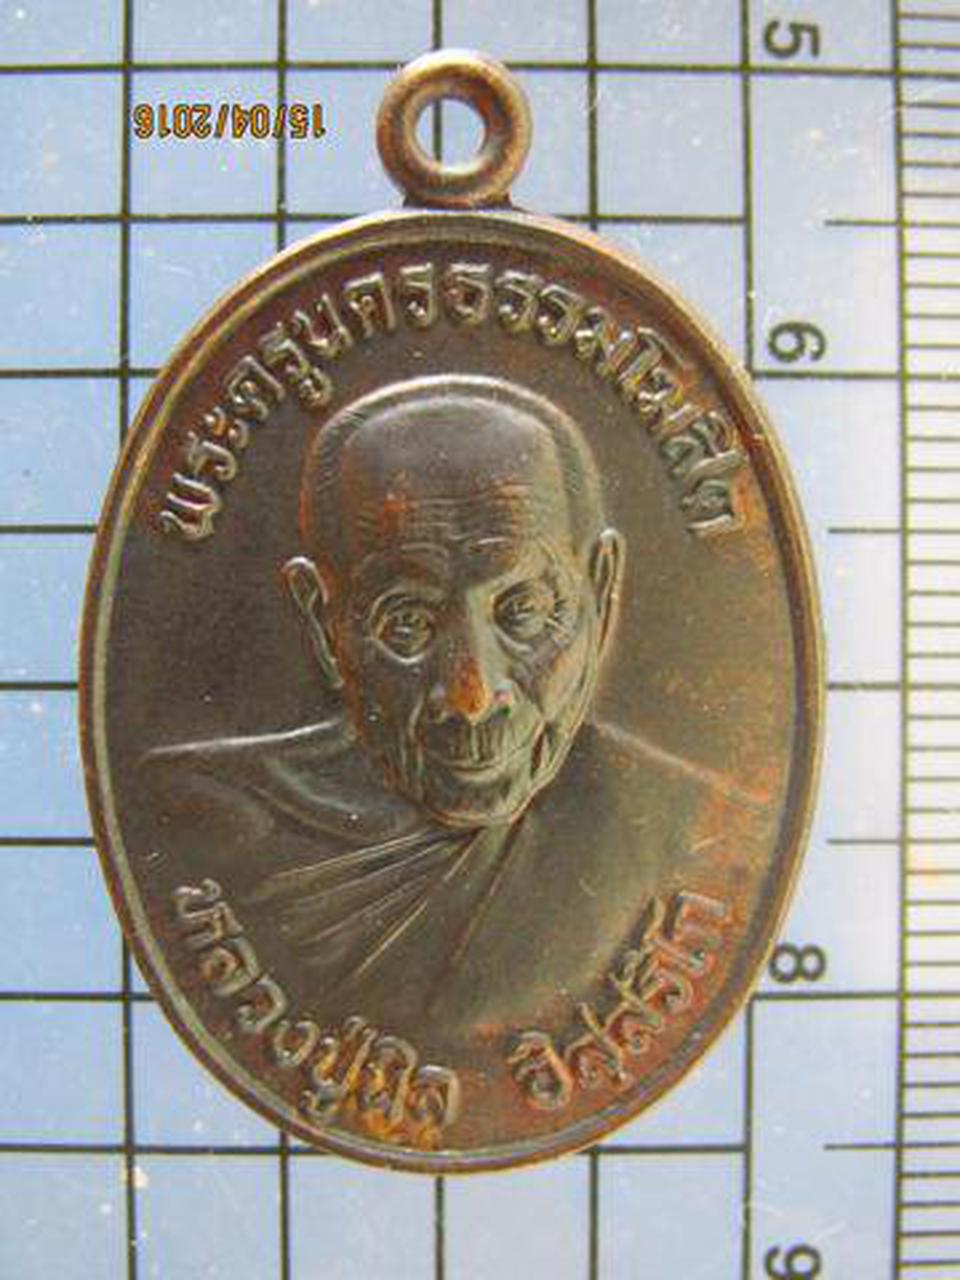 3324 เหรียญหลวงปู่นิล วัดครบุรี ปี 2540 รุ่นสร้างองค์เจดีย์ 